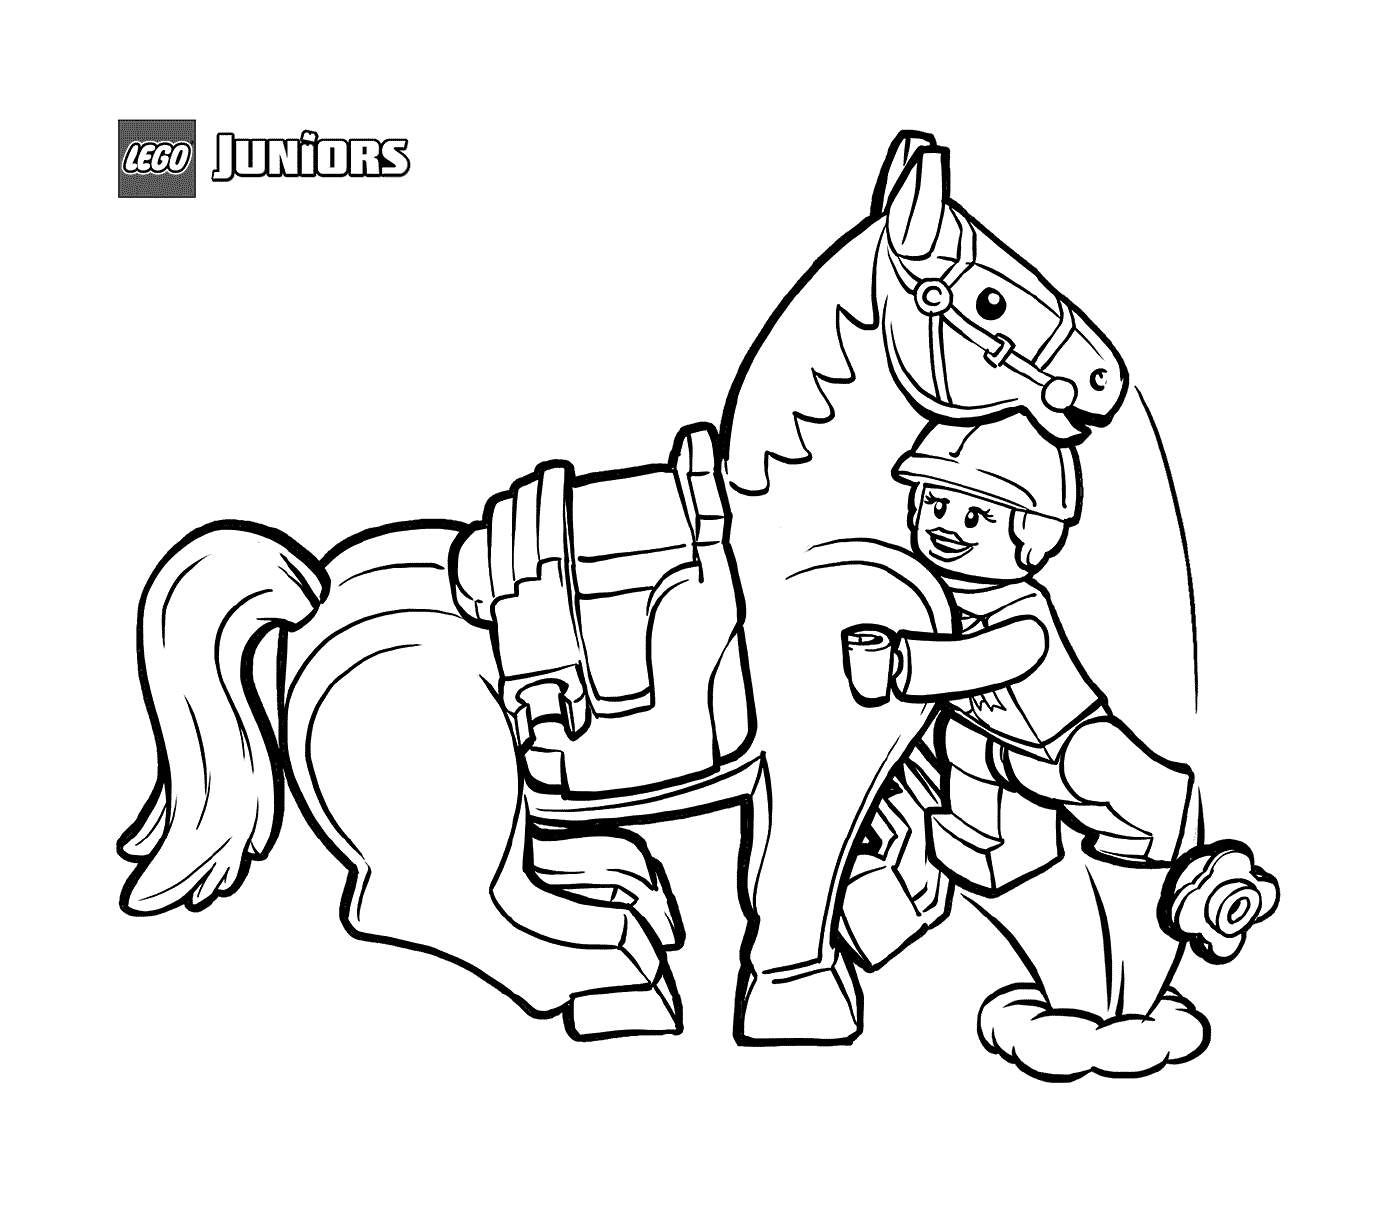  Cavaliere e cavallo LEGO Junior 